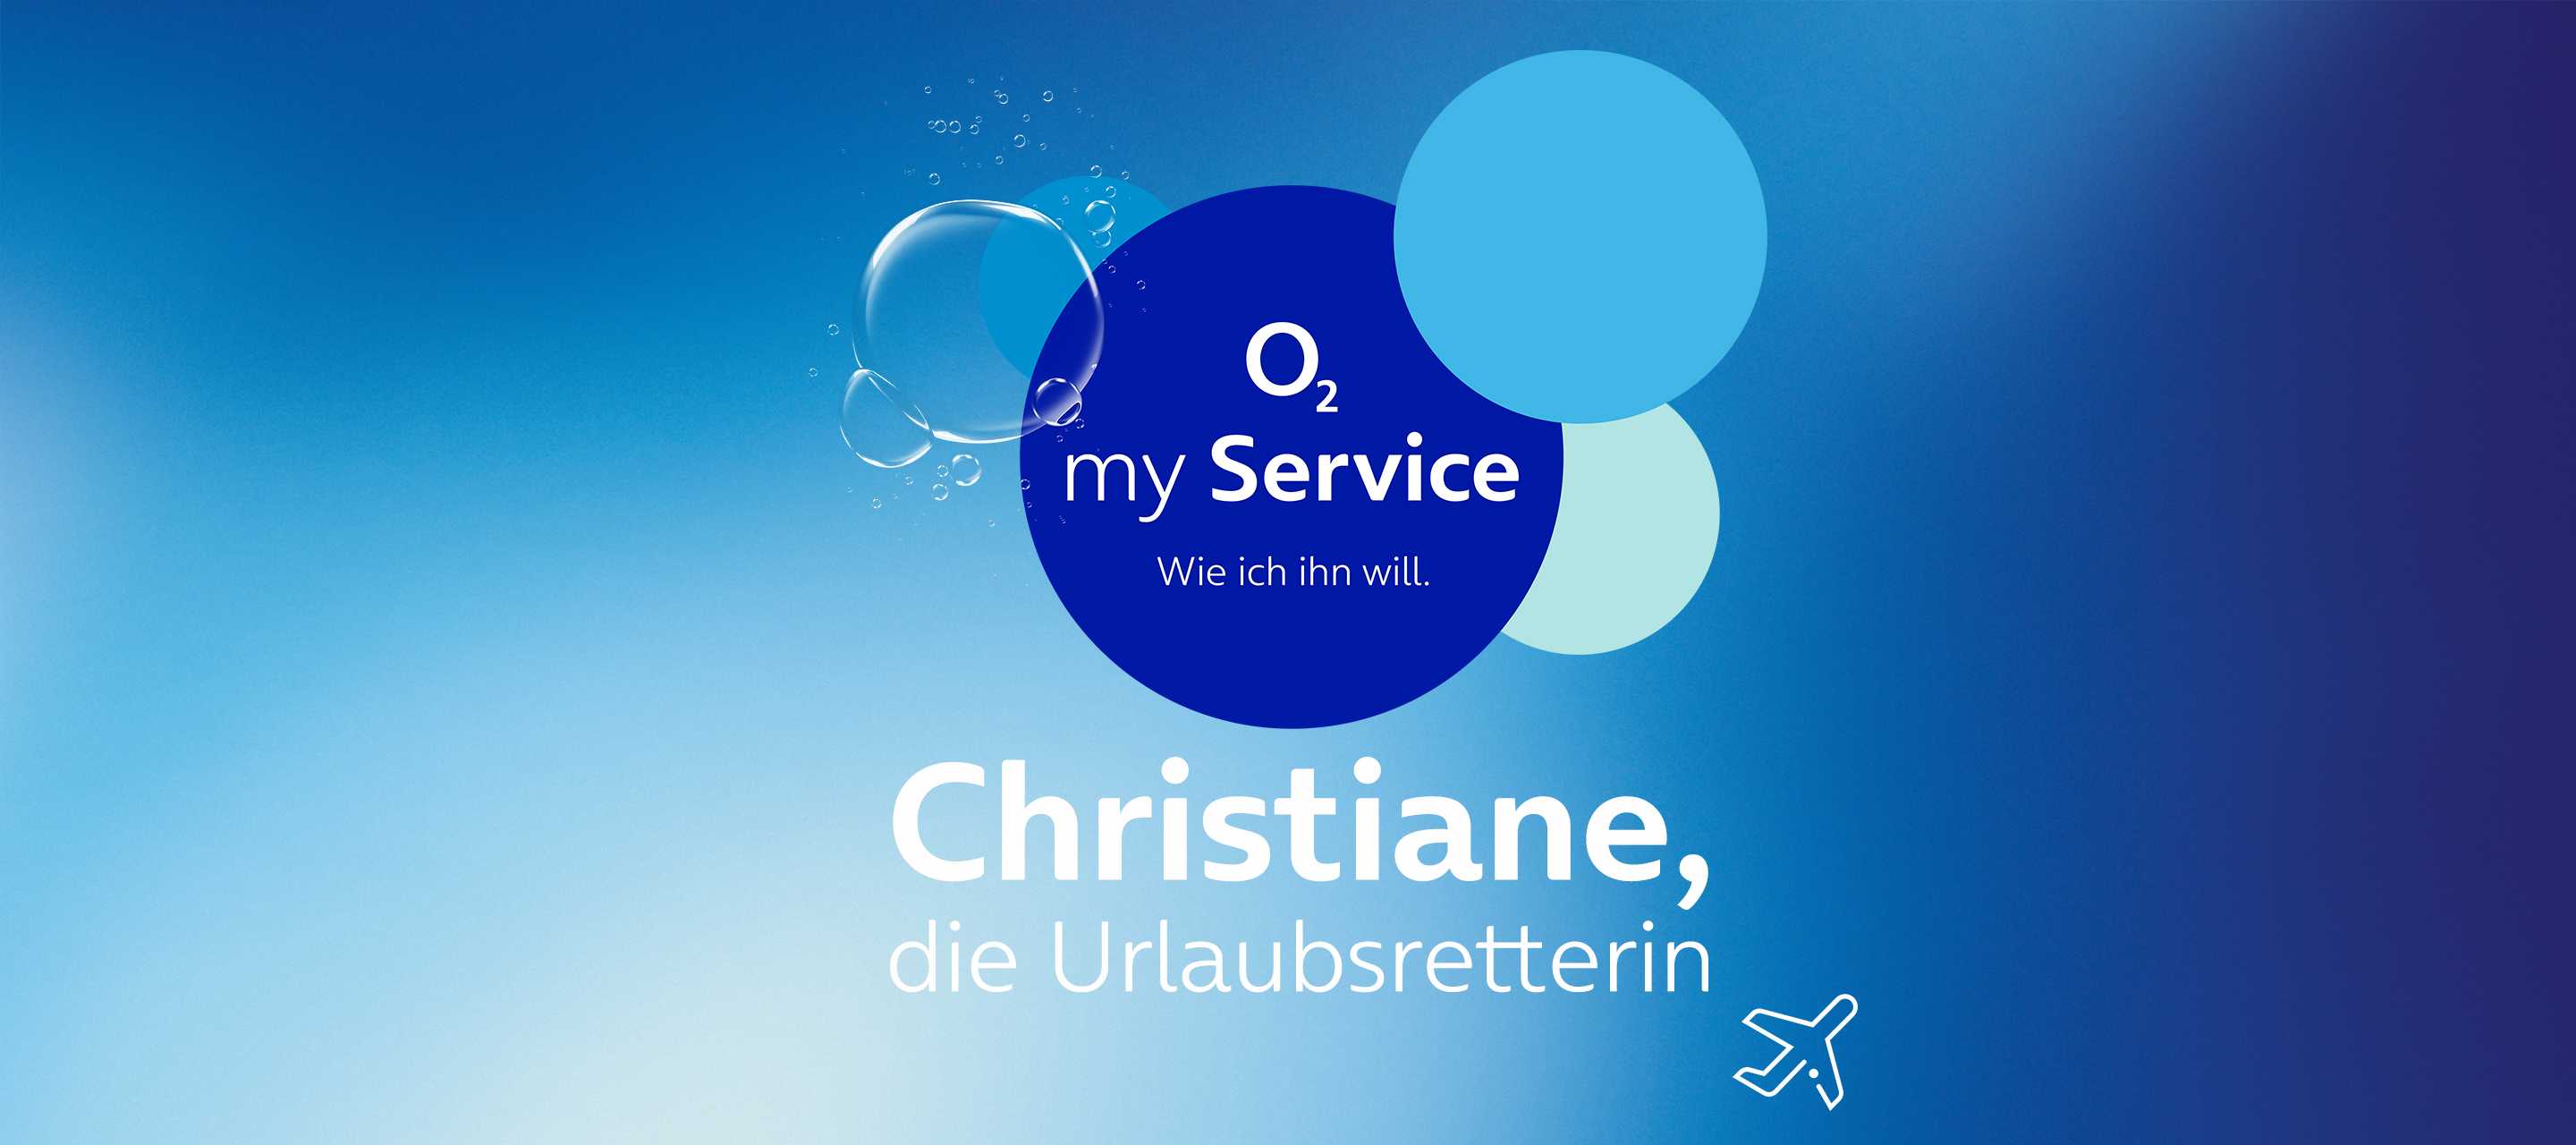 Die Gesichter hinter O₂ my Service: Christiane, die Urlaubsretterin